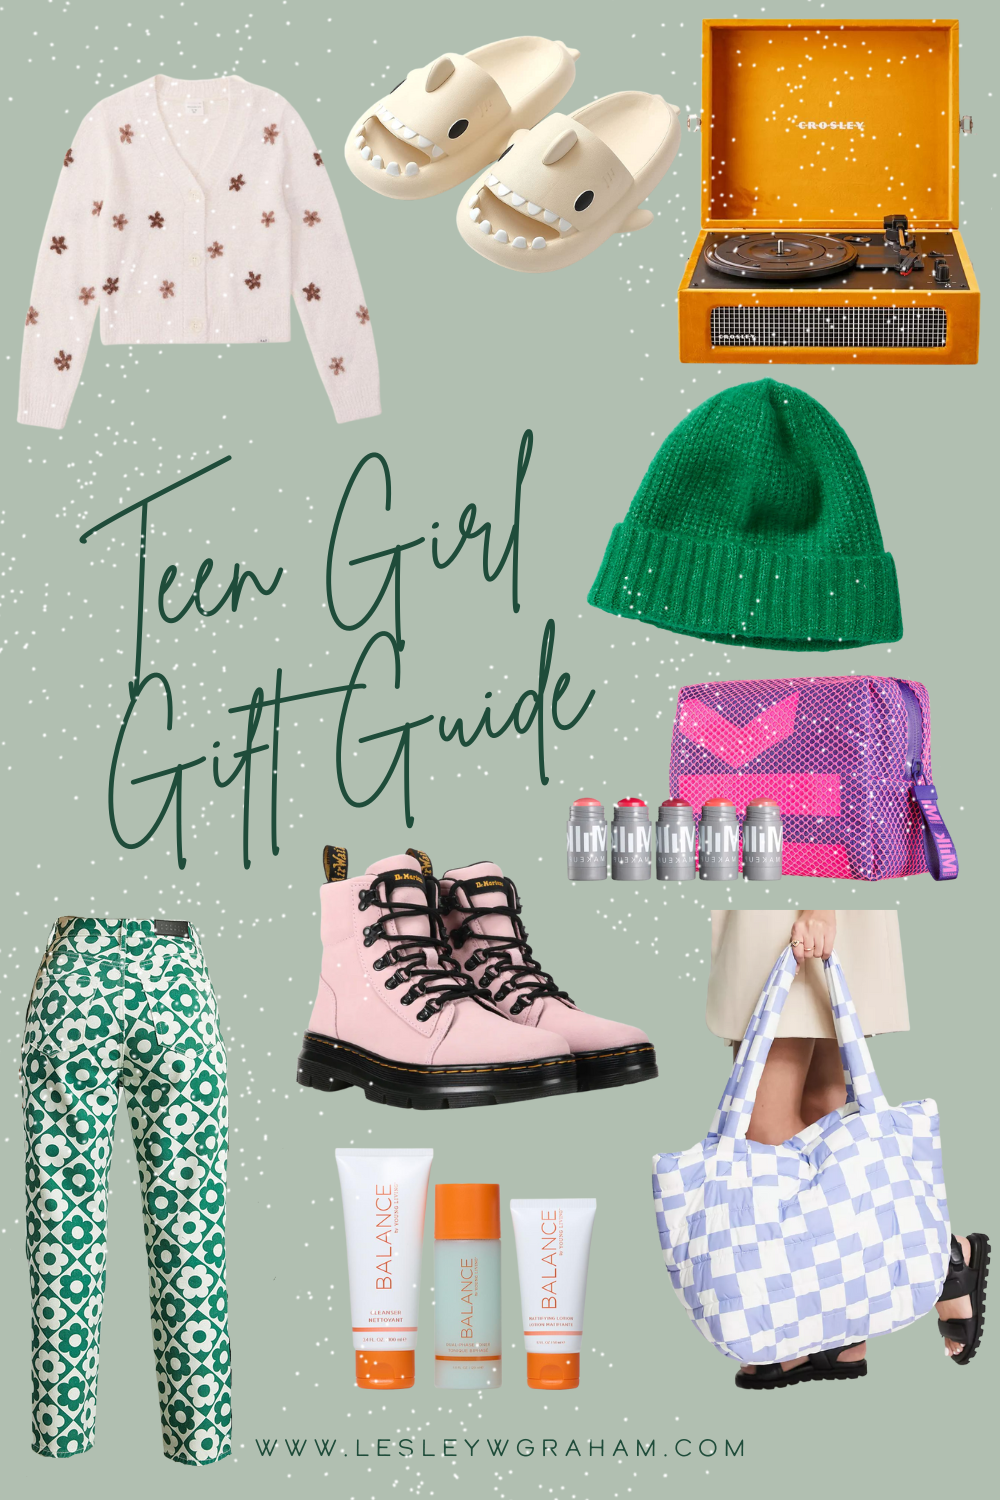 Teen girl gift guide